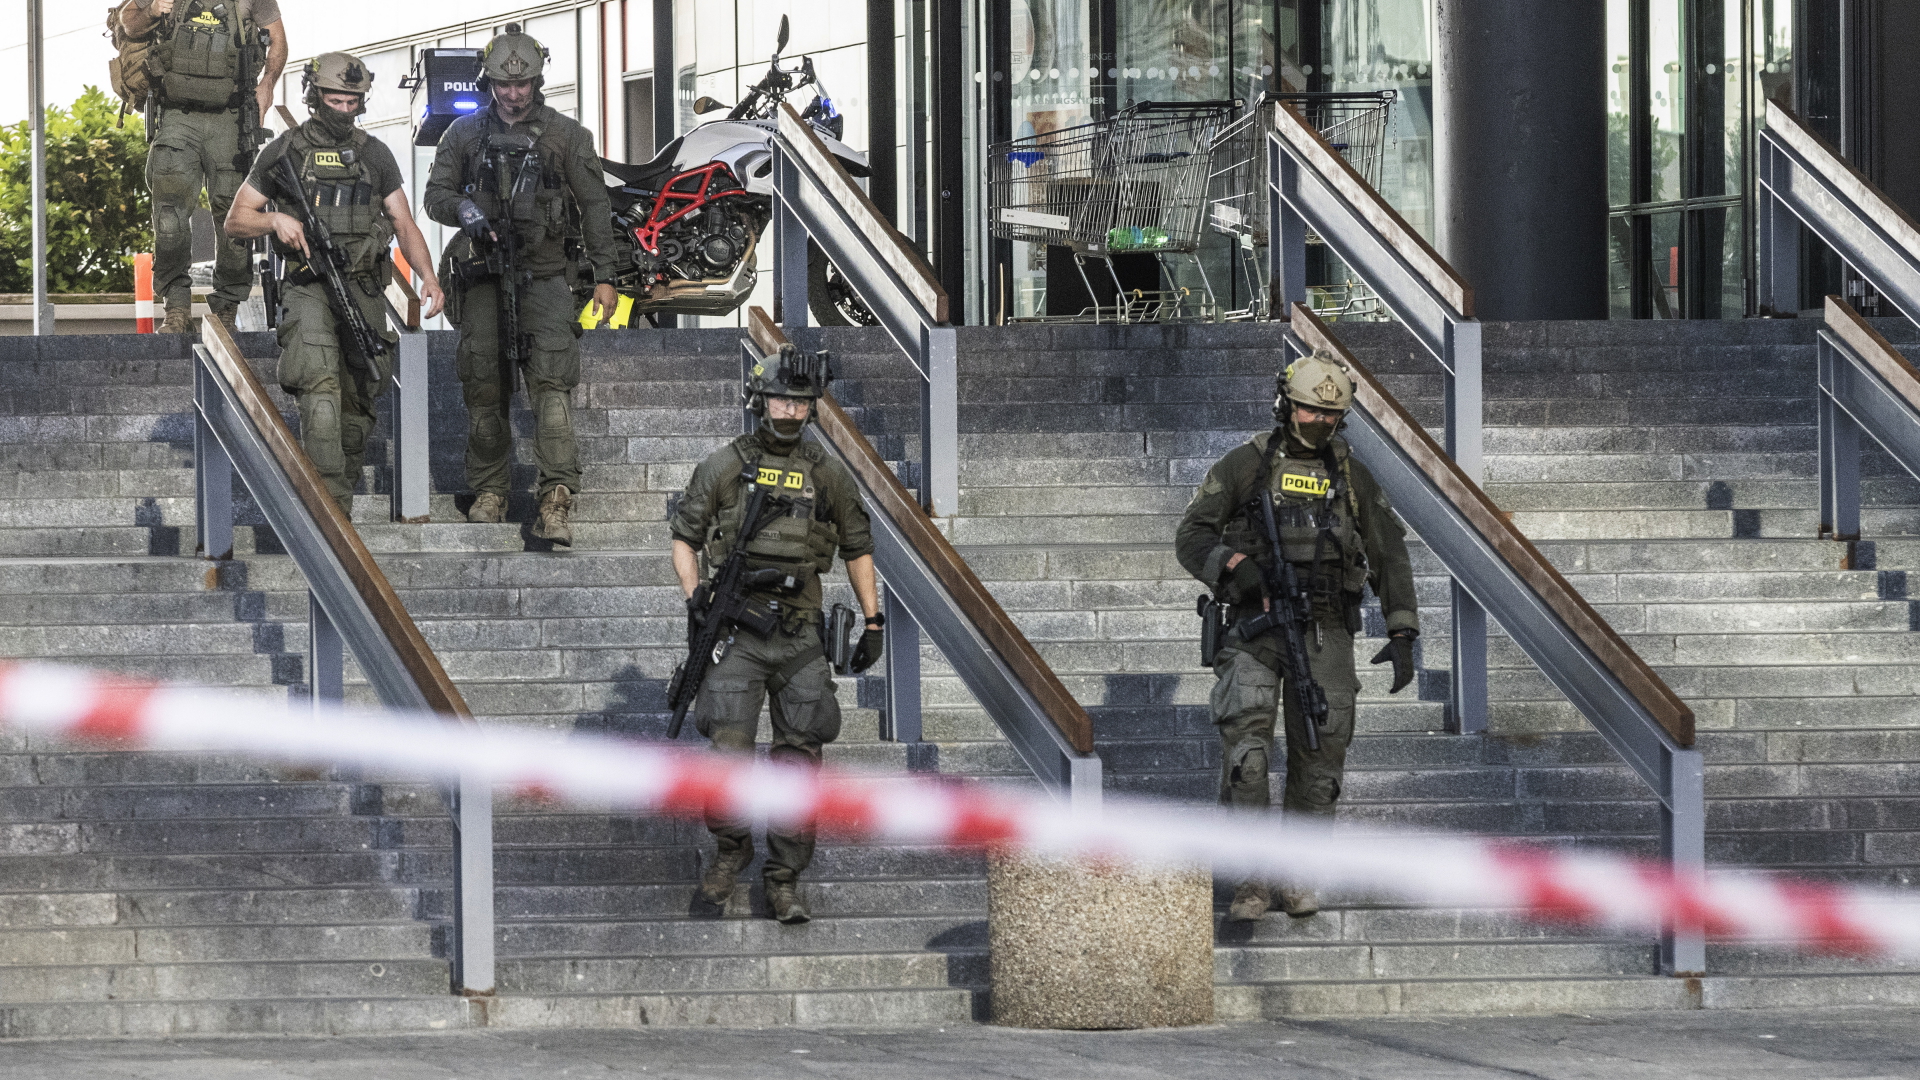 Polizisten verlassen das Einkaufszentrum in Kopenhagen nach dem Angriff | dpa